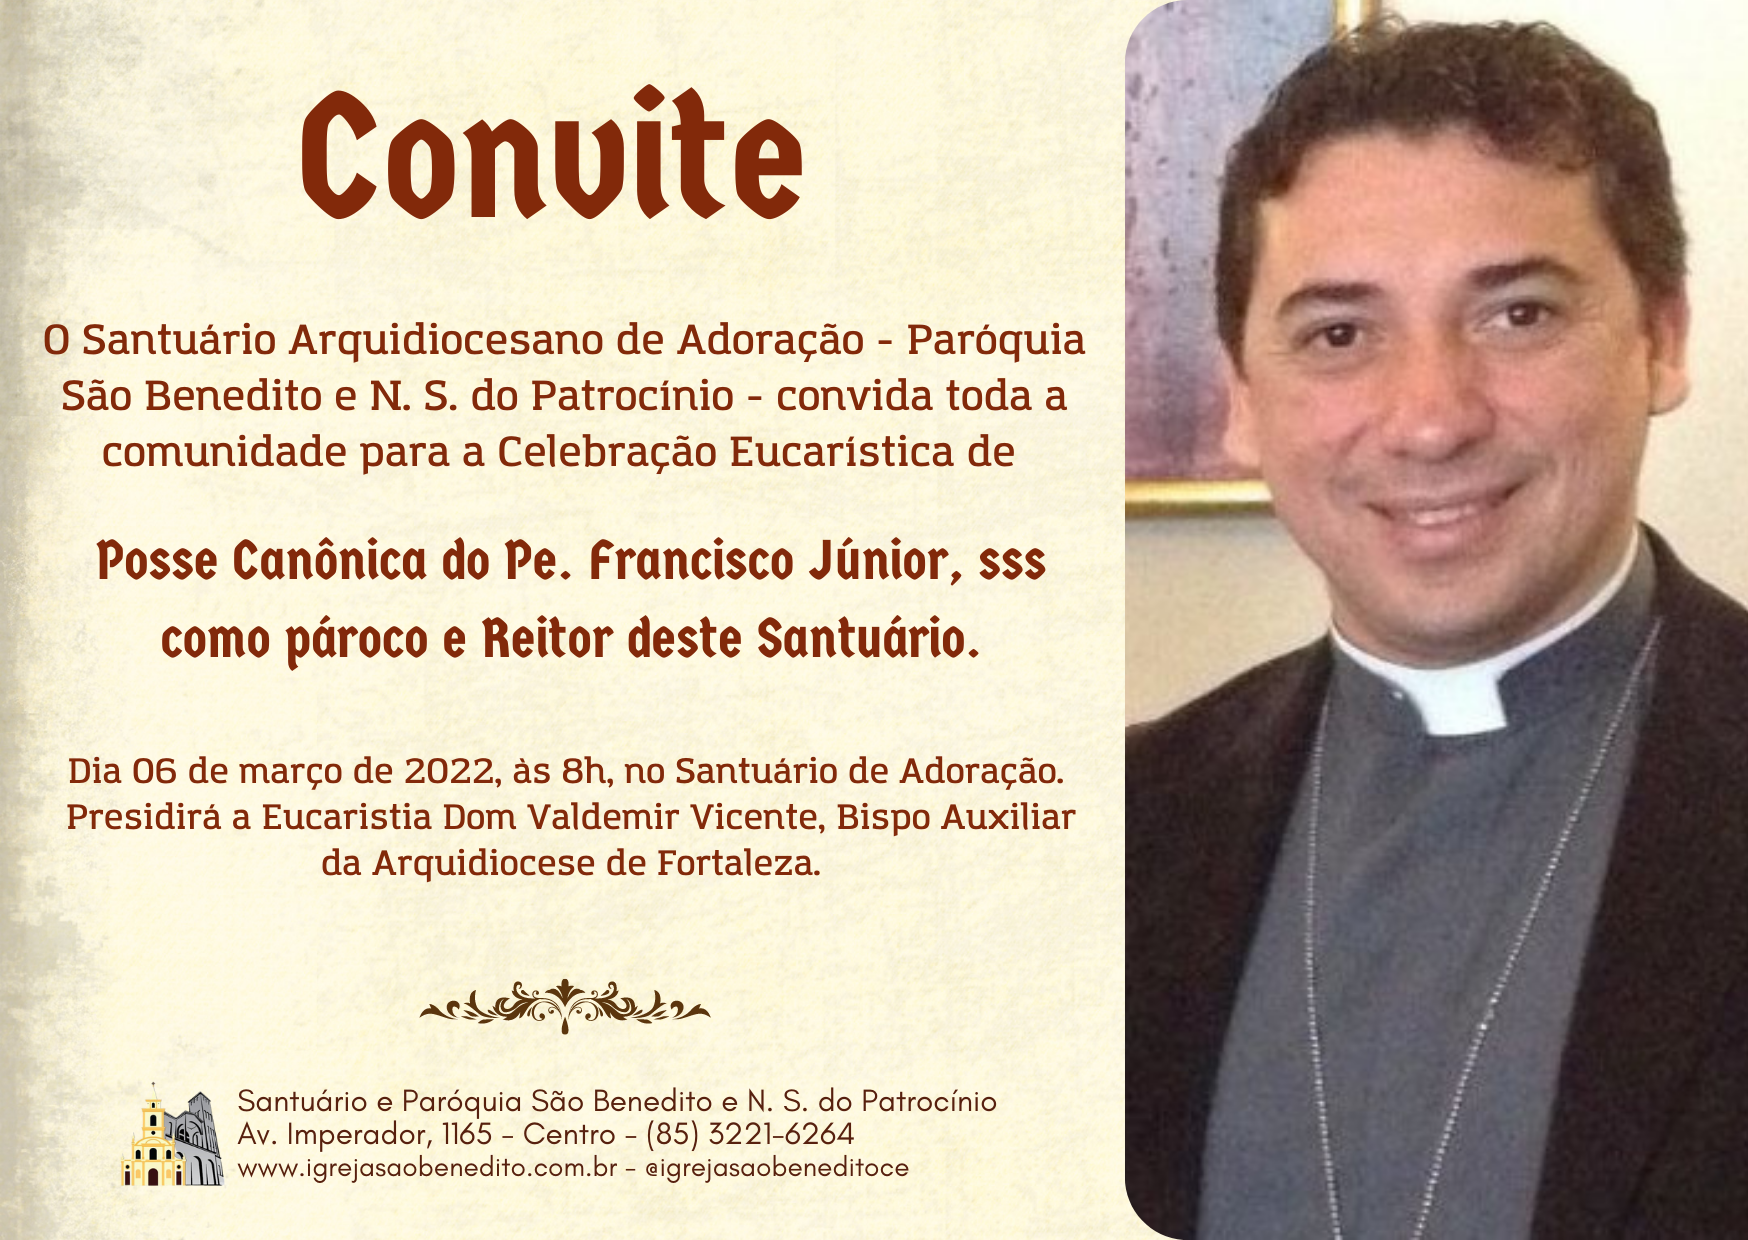 Missa de Posse Canônica do Pe. Francisco Júnior, sss como reitor e pároco do santuário no próximo dia 06/03